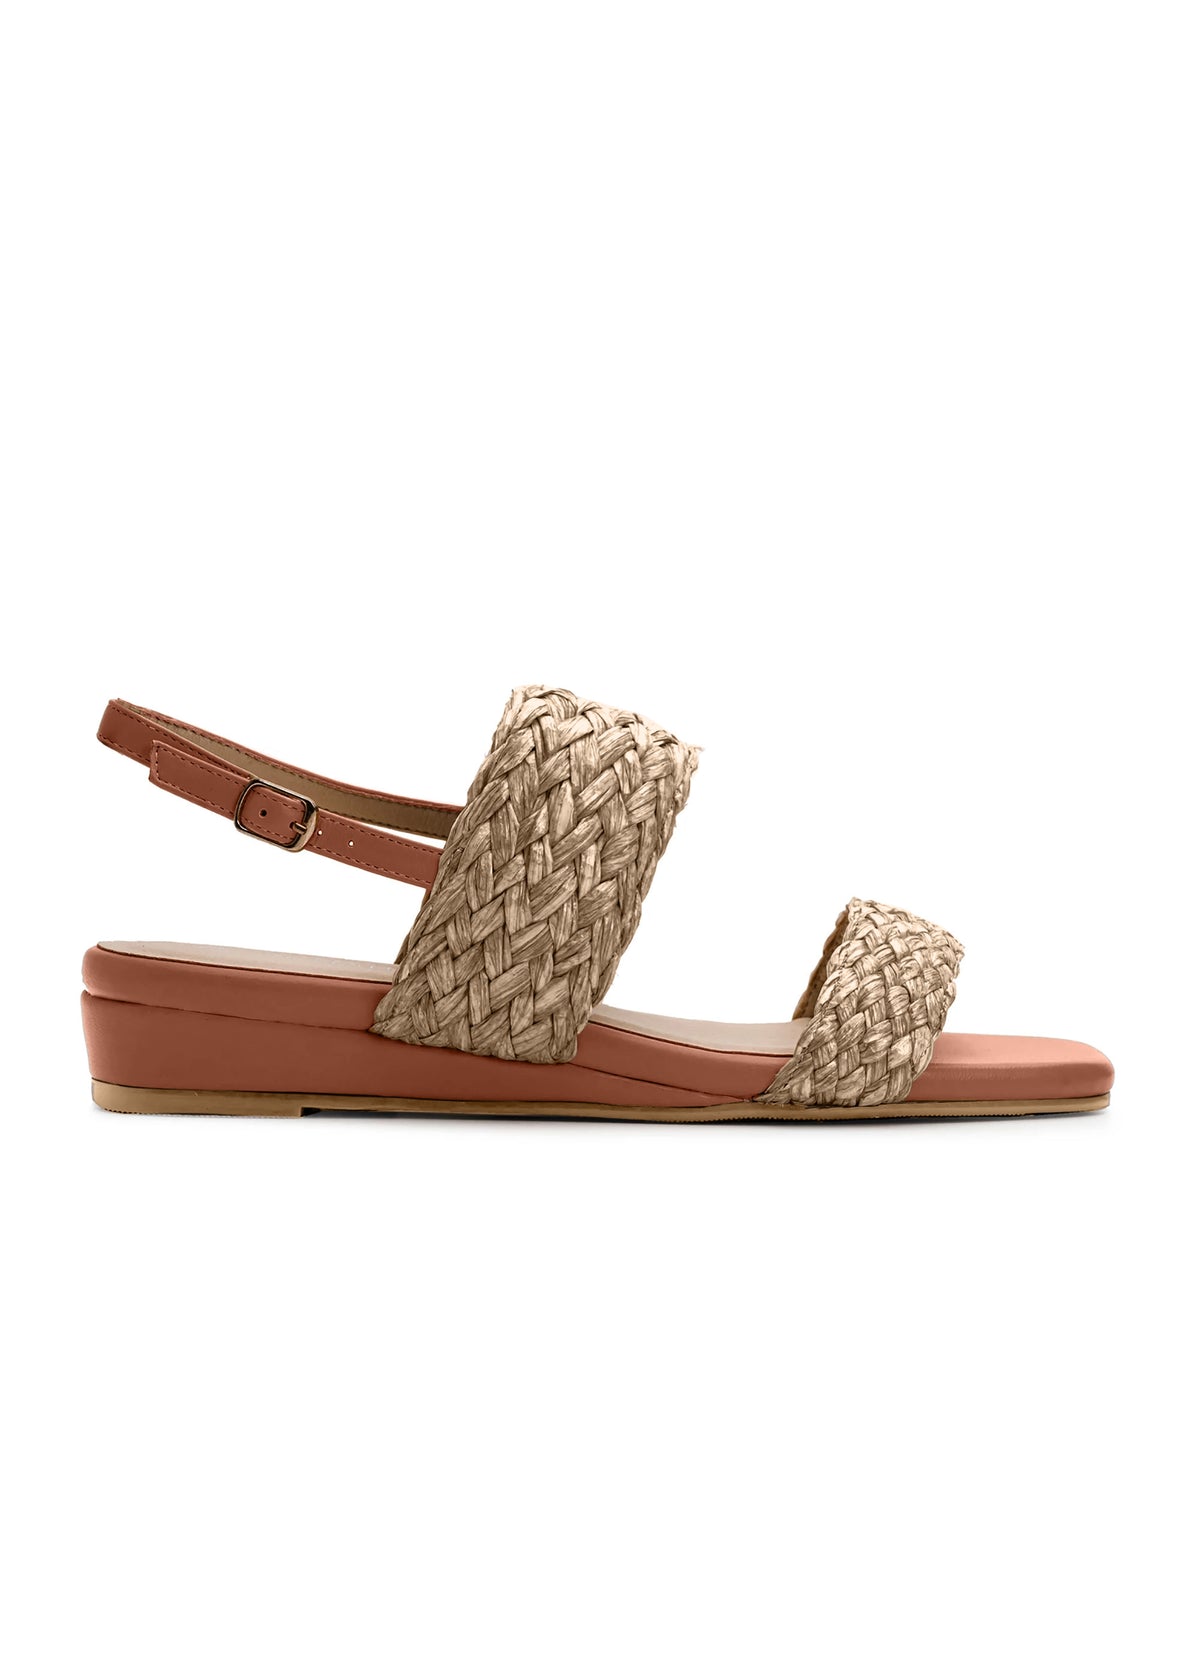 Sandaler med låg kilklack - bruna, flätade remmar